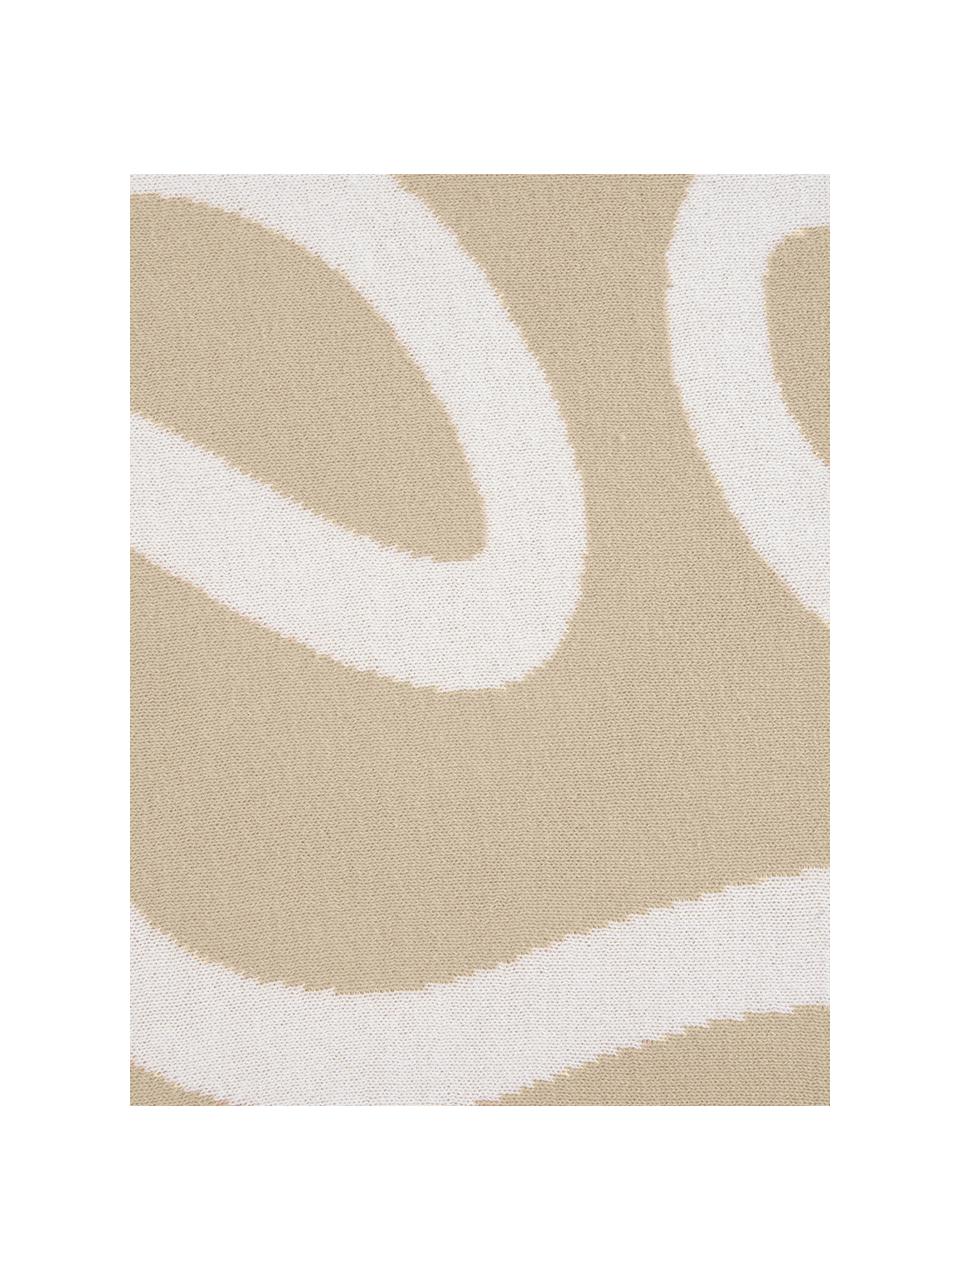 Fijn gebreide dubbelzijdige kussenhoes Amina met abstract lijnpatroon, Katoen, Beige/wit, 40 x 40 cm